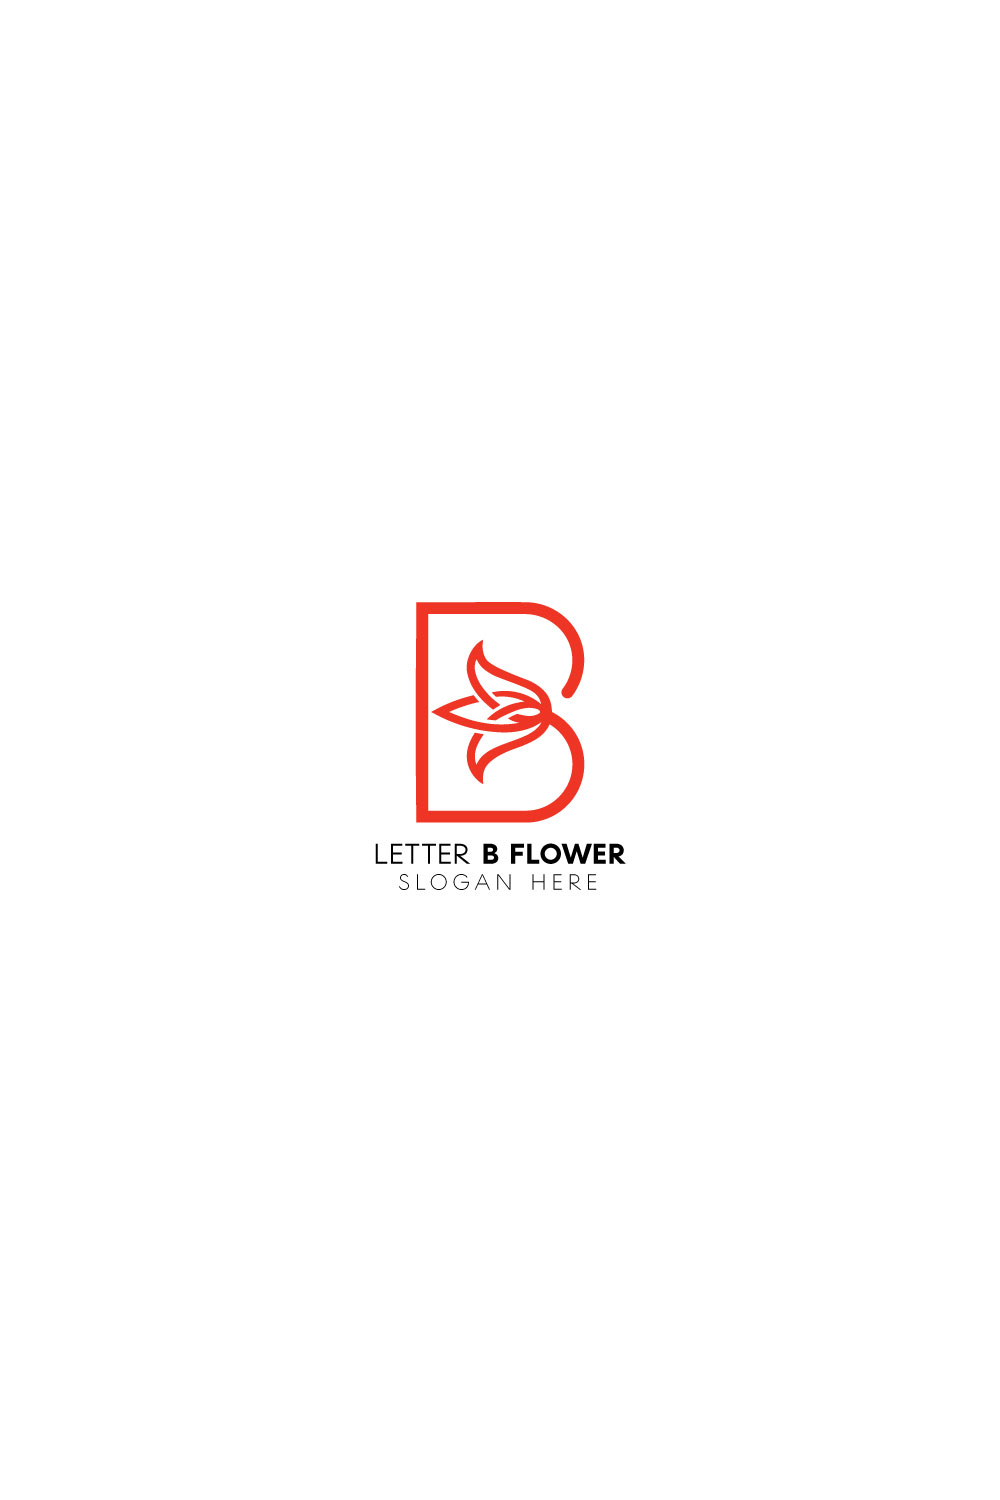 Letter b flower logo pinterest preview image.